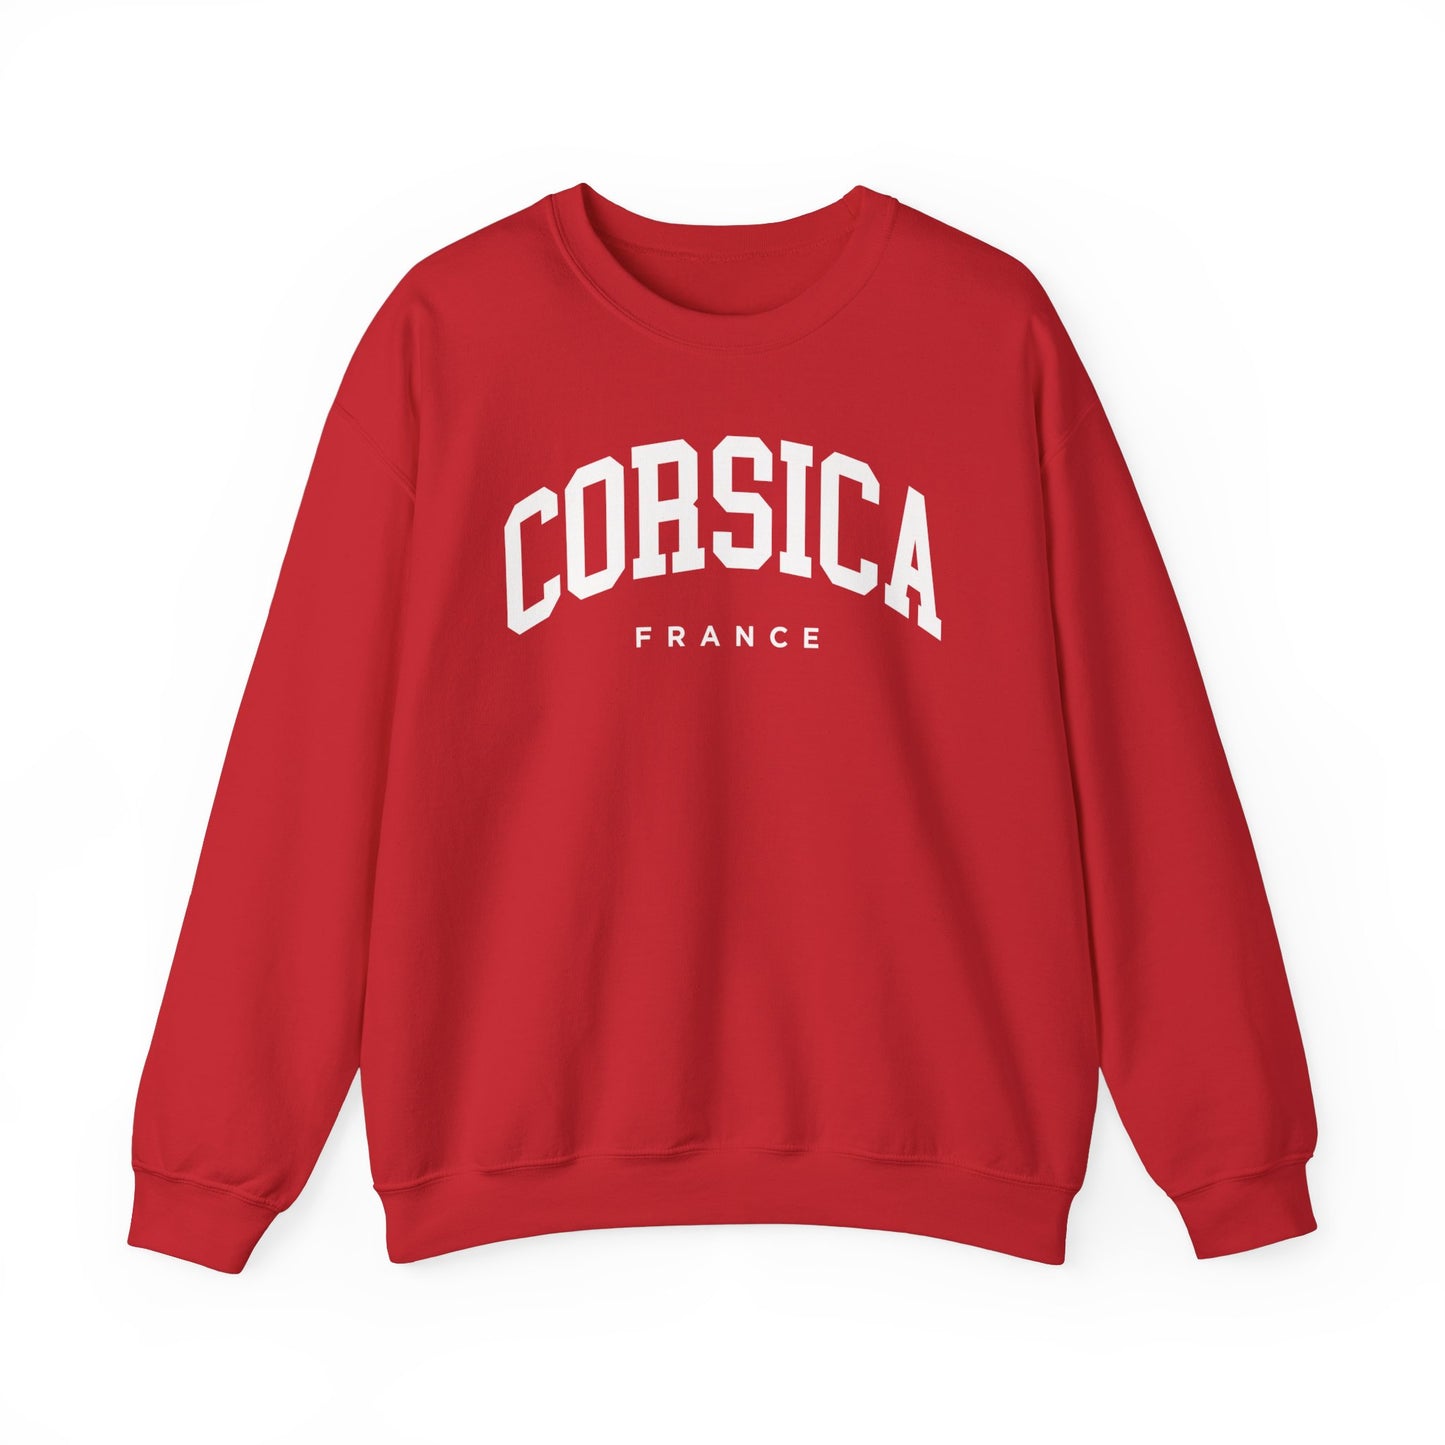 Corsica France Sweatshirt